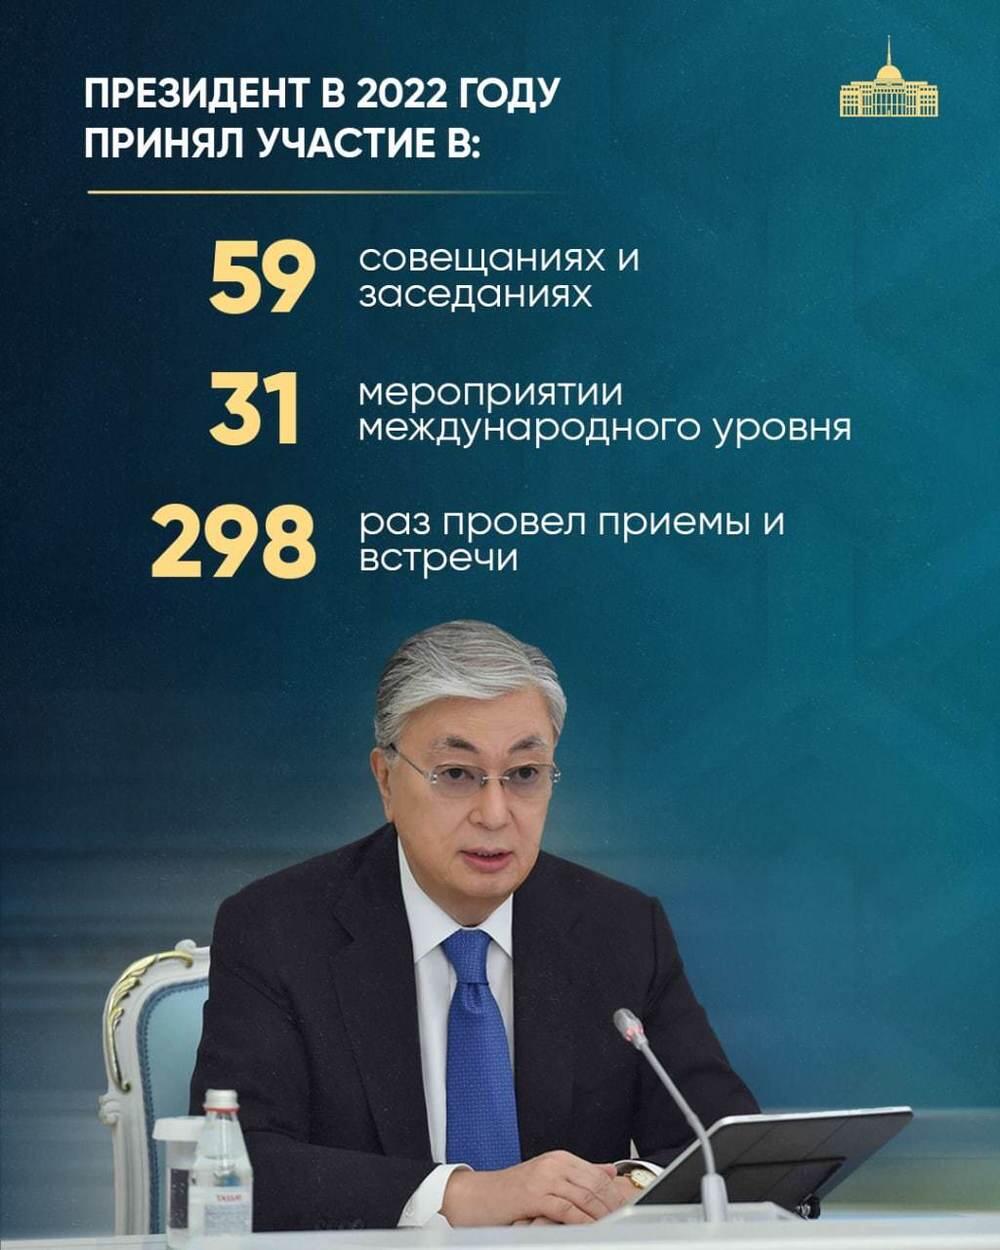 68 законов и 238 часов в самолете: итоги деятельности Токаева за 2022 год. Фото: Telegram/bort_01